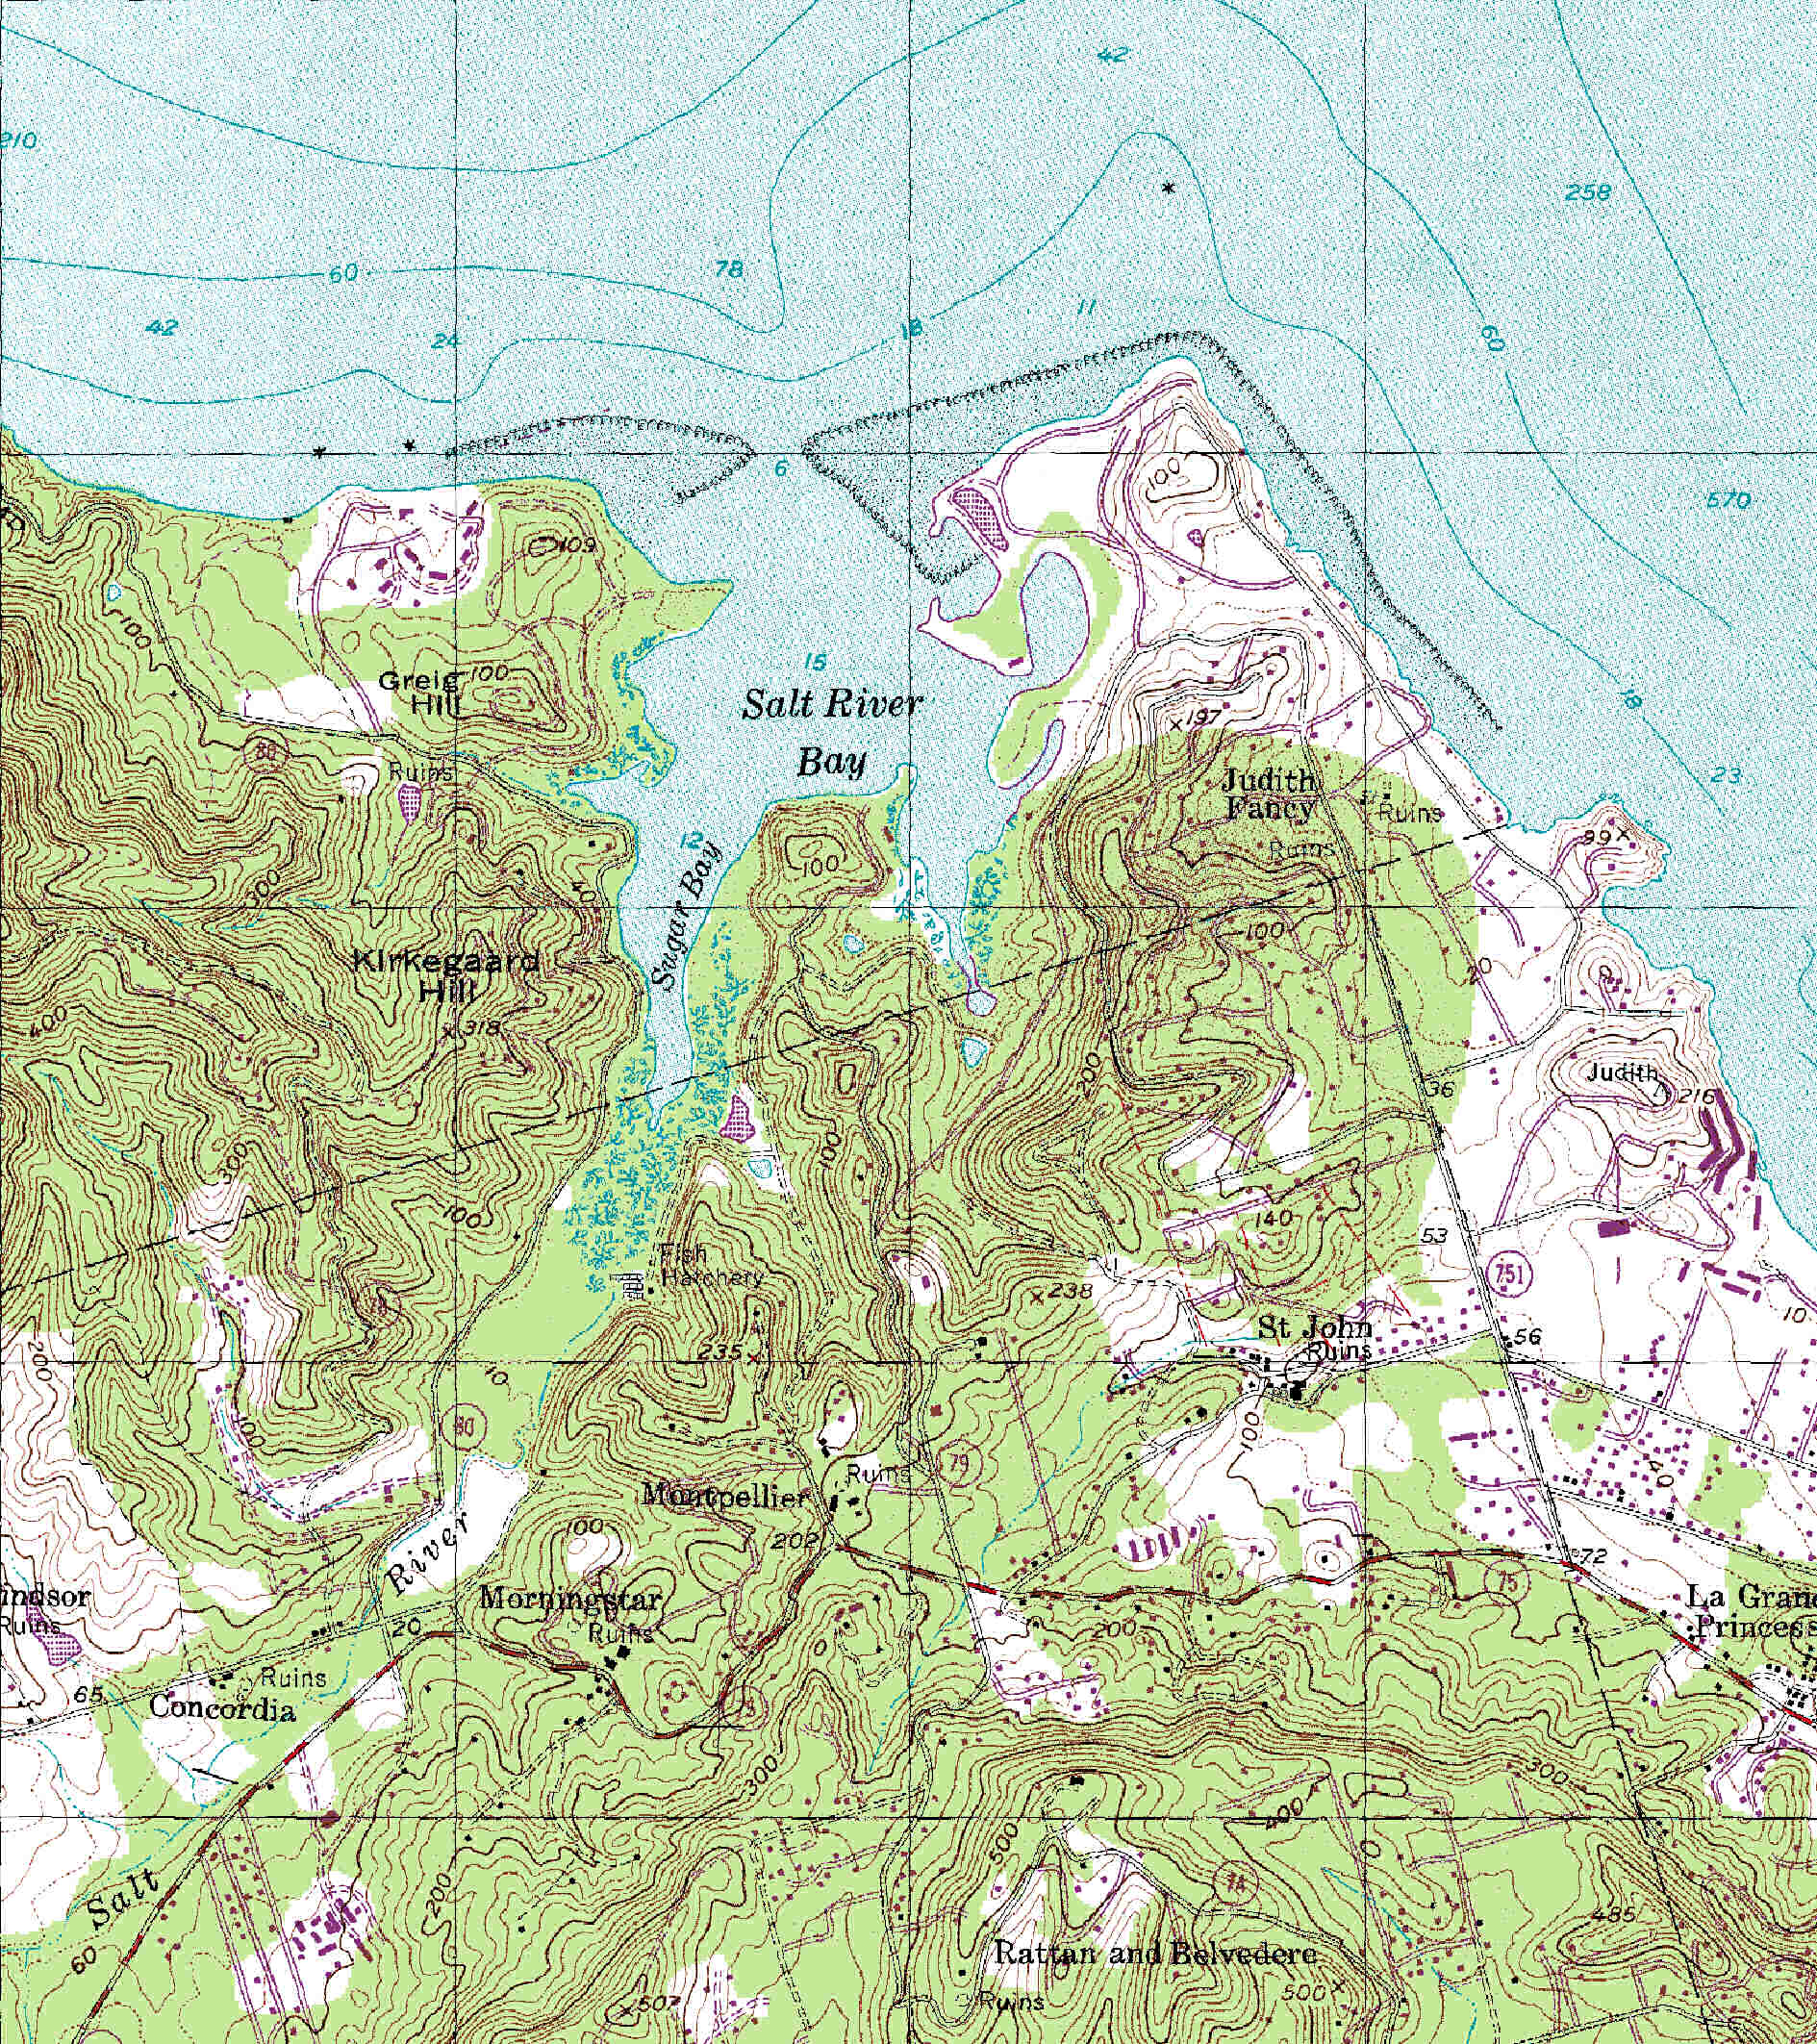 Topografisk kort i 1:24,000 over St. Croix, udsnit med Salt River Bay